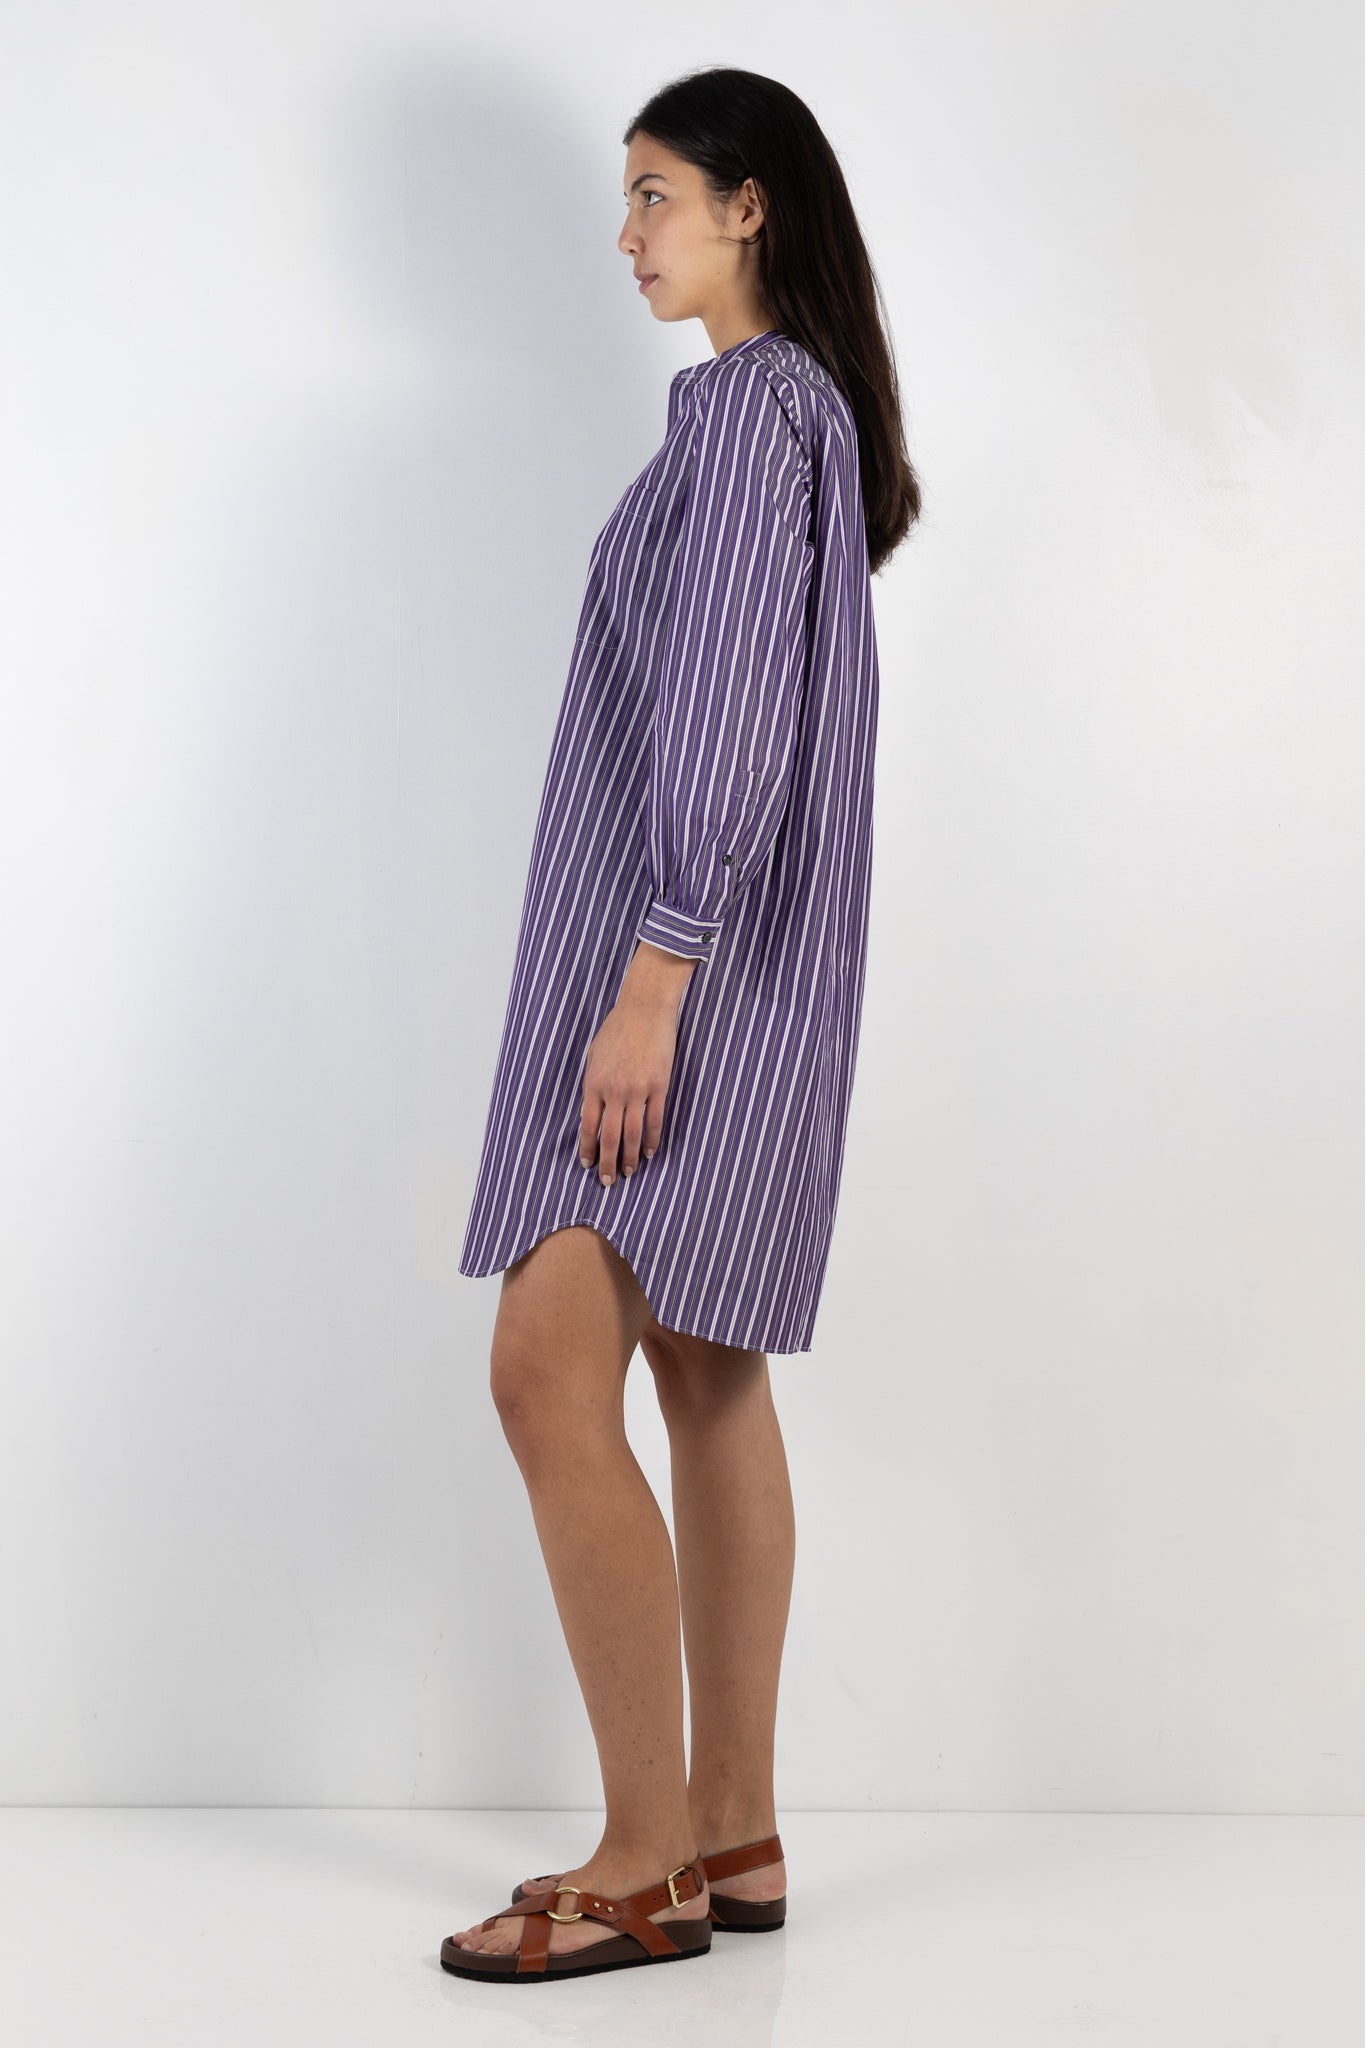 wopmens dress | Soeur Francine dress | The Standard Store